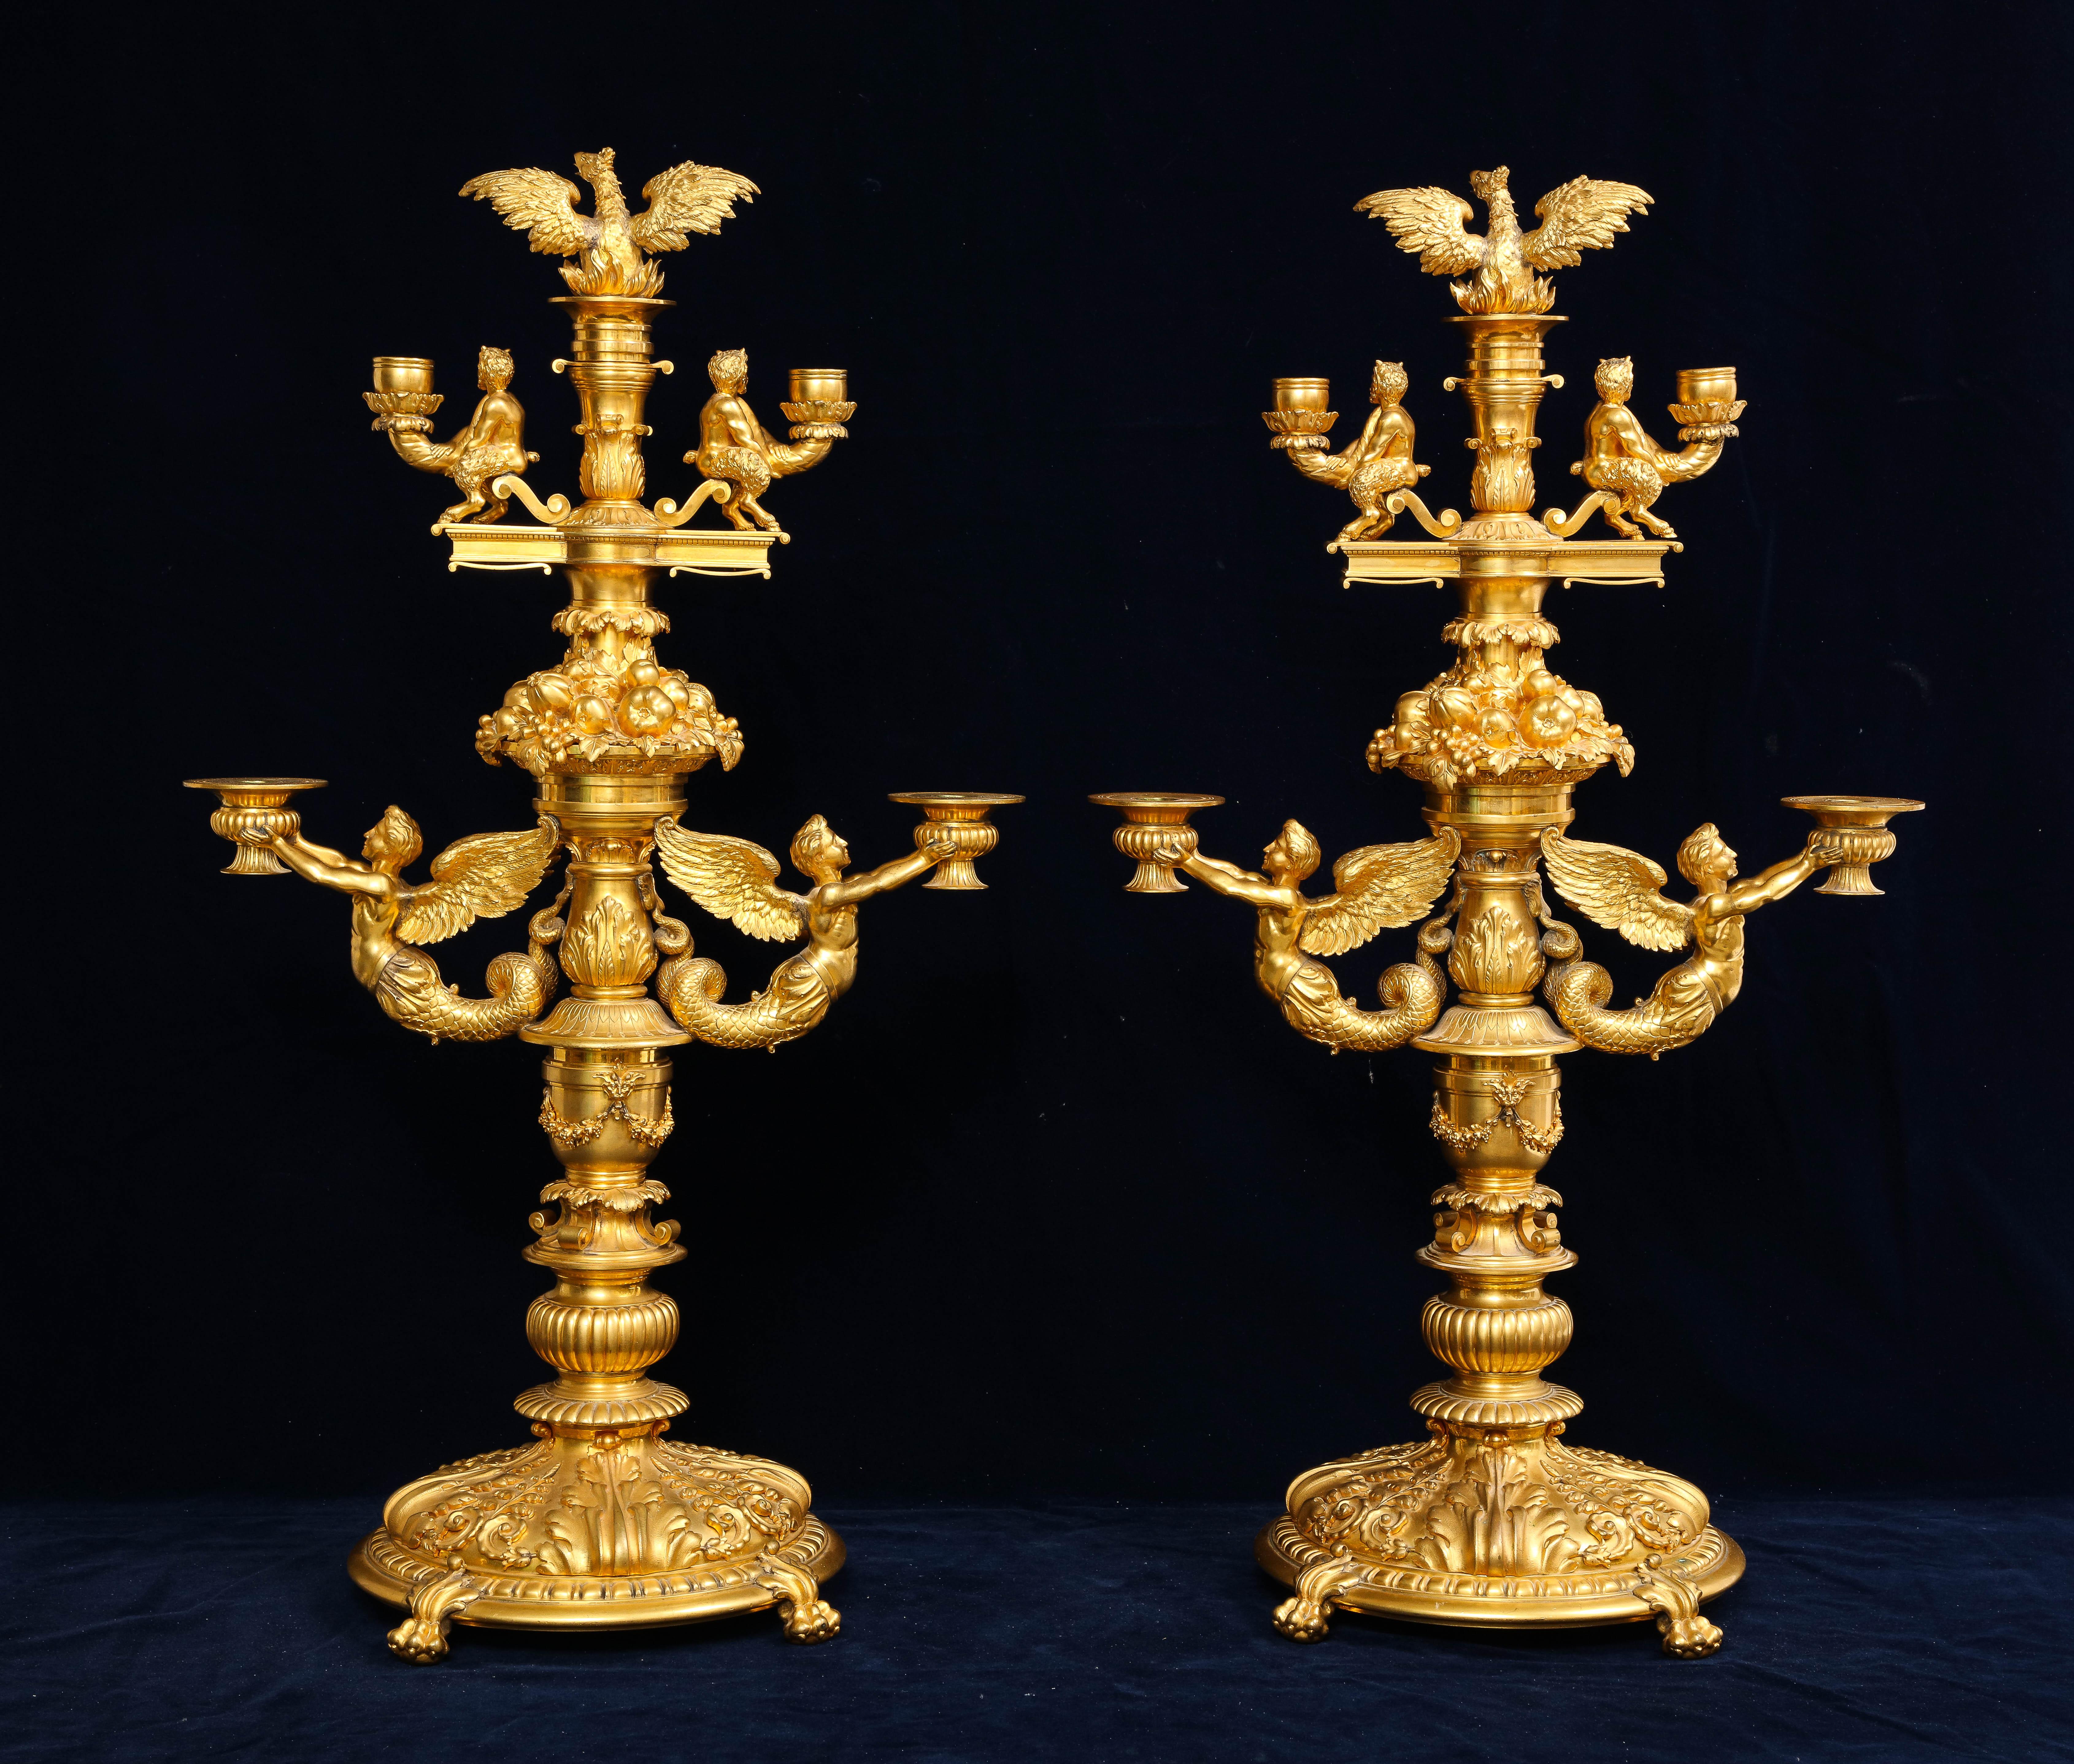 Merveilleuse paire de candélabres à quatre bras en bronze doré du XIXe siècle, signés Paul Canaux. Paul Canaux était un incroyable bijoutier et orfèvre, et produisait ses pièces au 30 rue des Francs-Bourgeois à Paris. Il a d'abord travaillé pour le